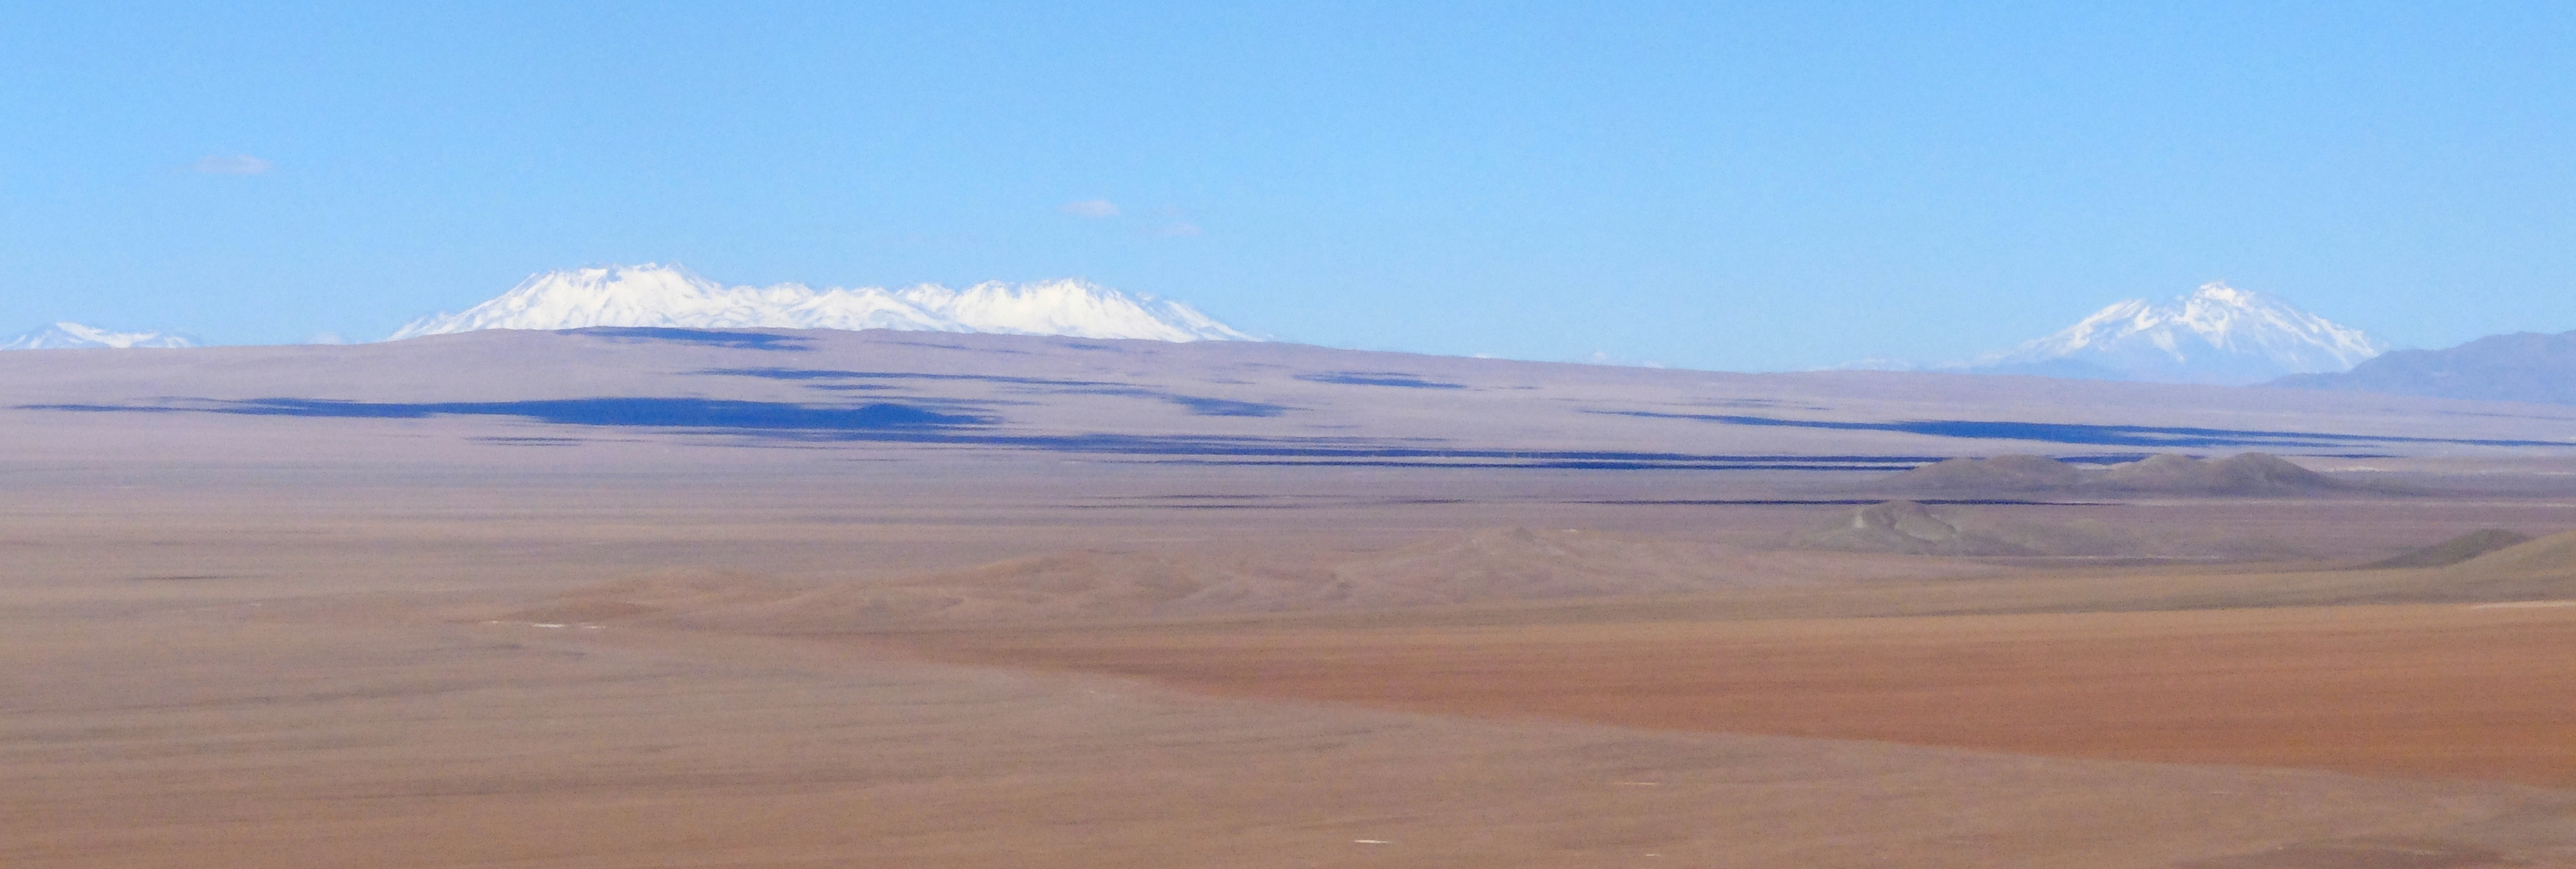 Landscape in the Cu prospective Cordillera Domeyko, Northern Chile